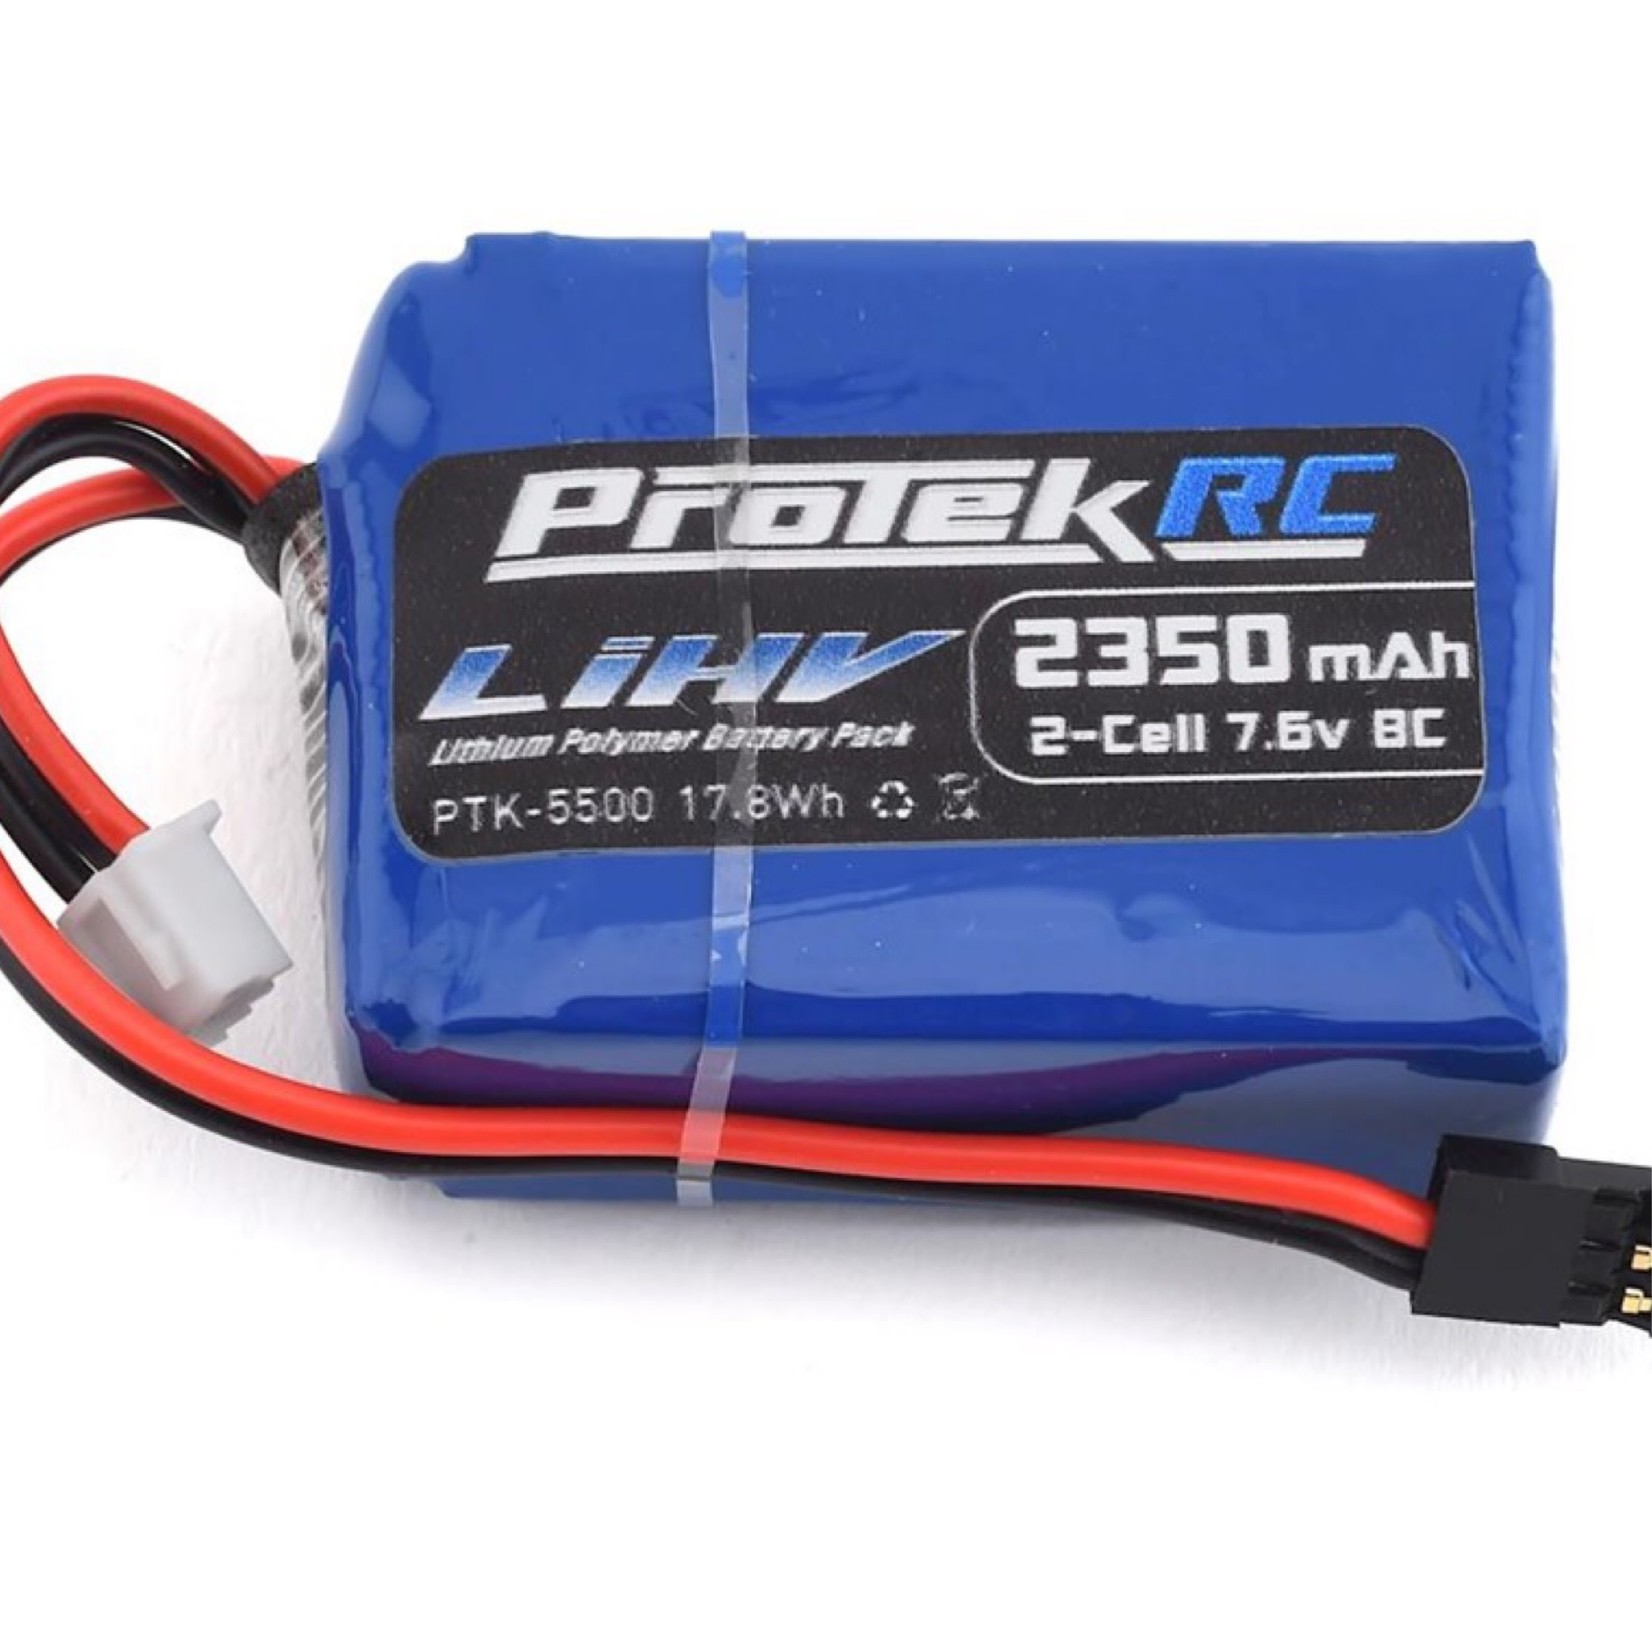 ProTek RC ProTek RC HV LiPo Receiver Battery Pack (HB/TLR 8IGHT) (7.6V/2350mAh) (w/Balancer Plug) #PTK-5500